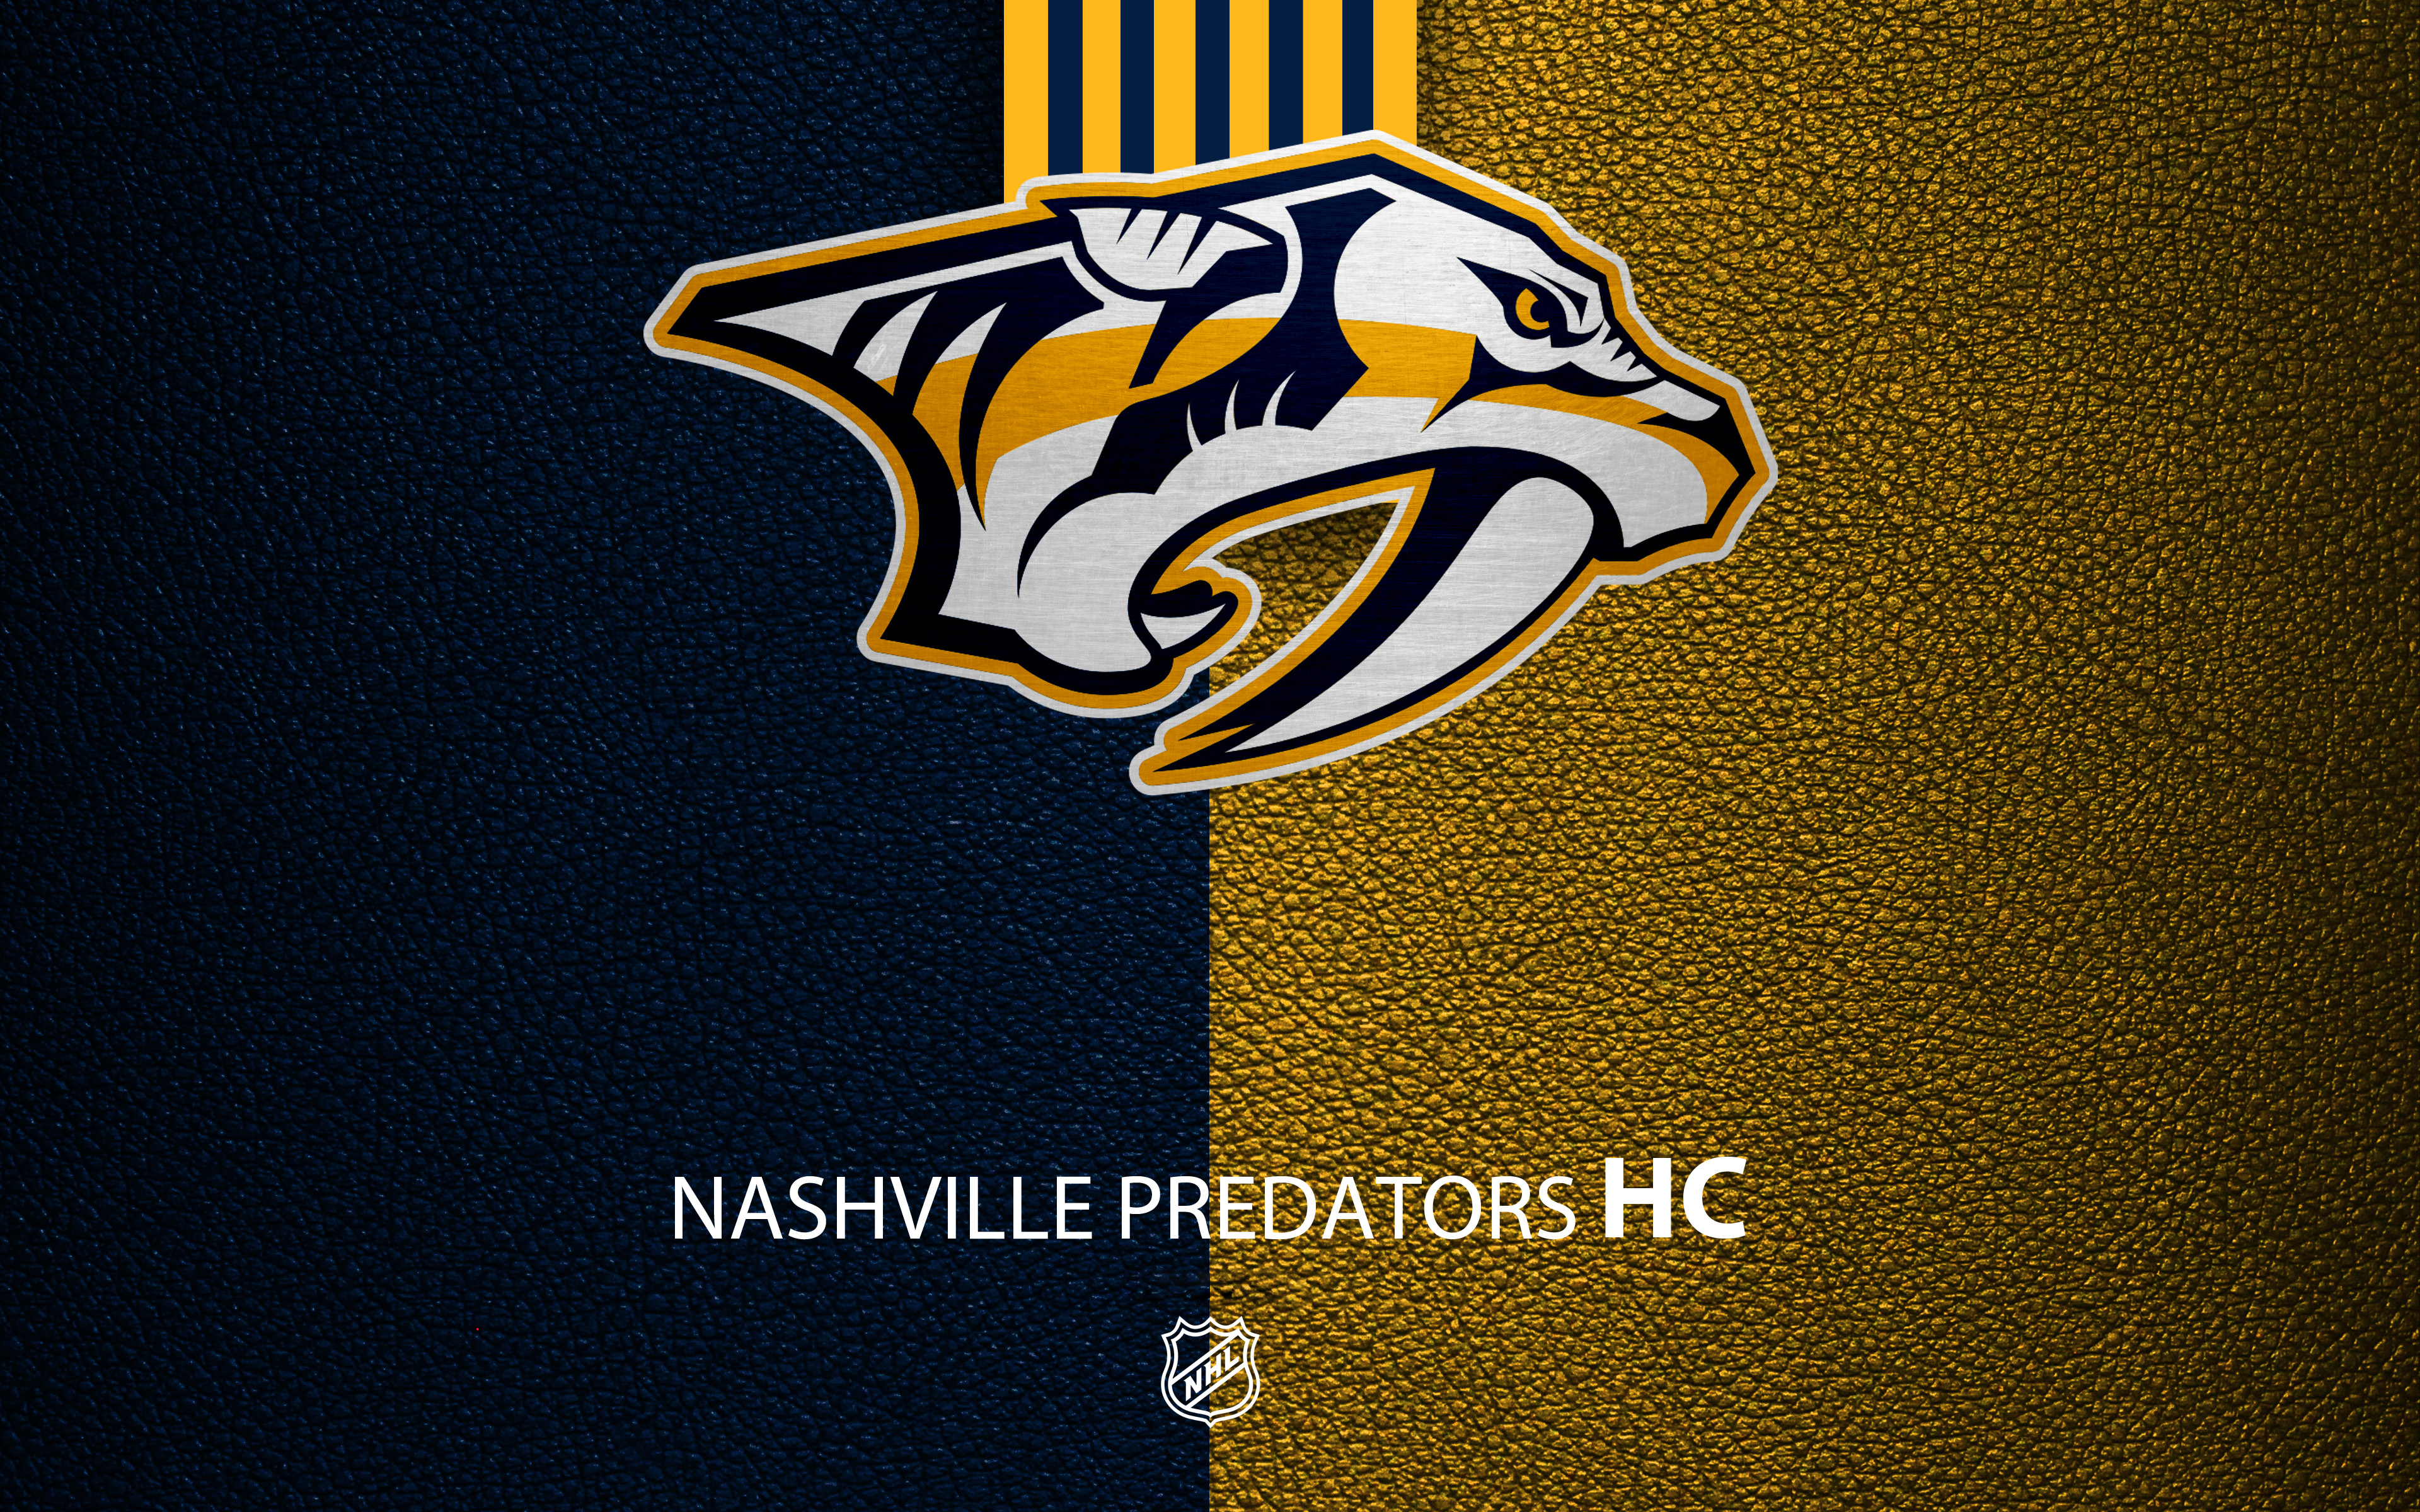 Nashville Predators 4k Ultra Hd Wallpaper - Nashville Predators , HD Wallpaper & Backgrounds